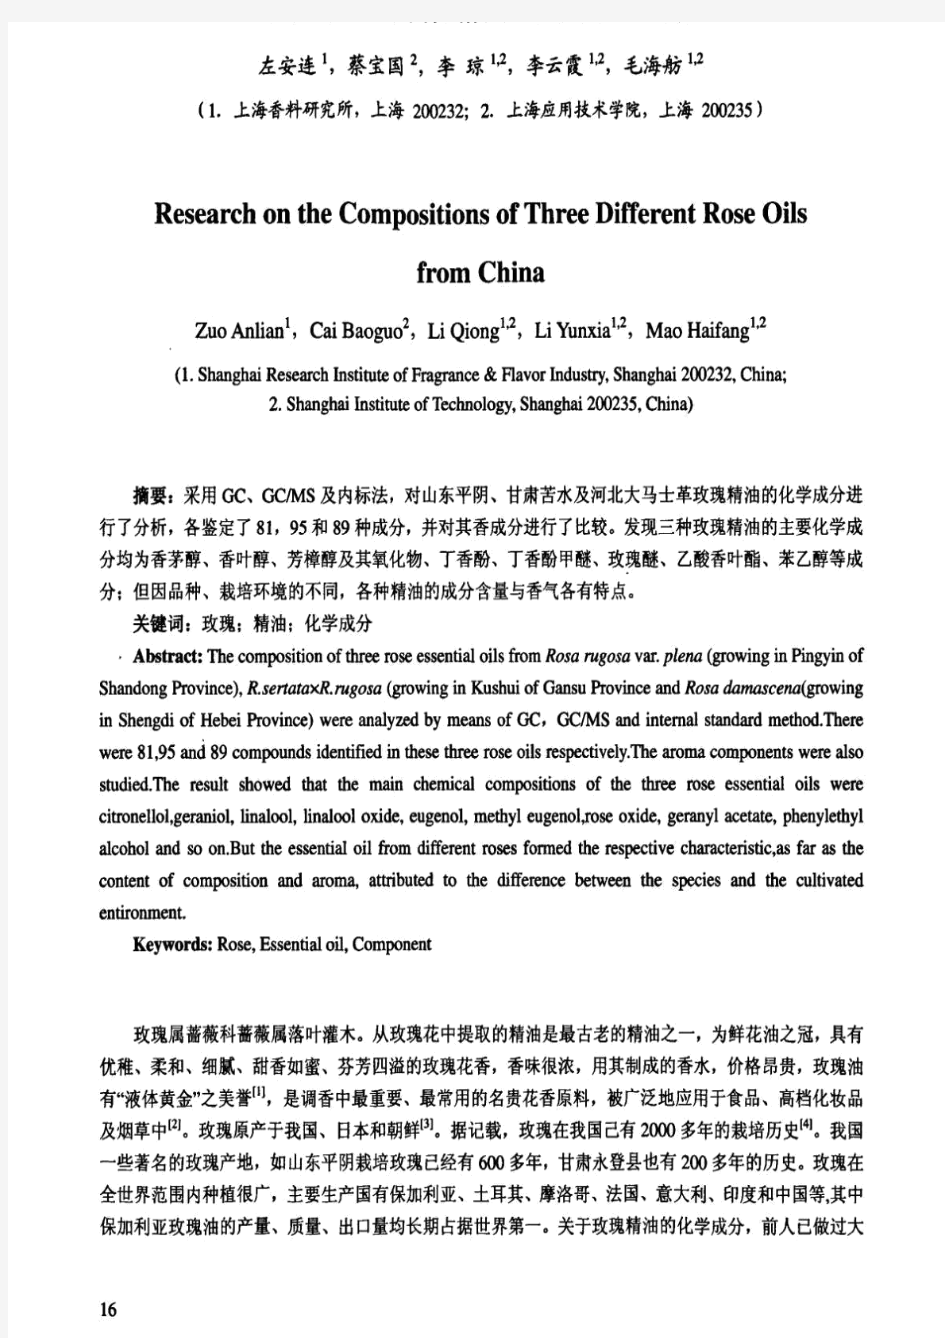 对中国三种玫瑰精油化学成分的研究